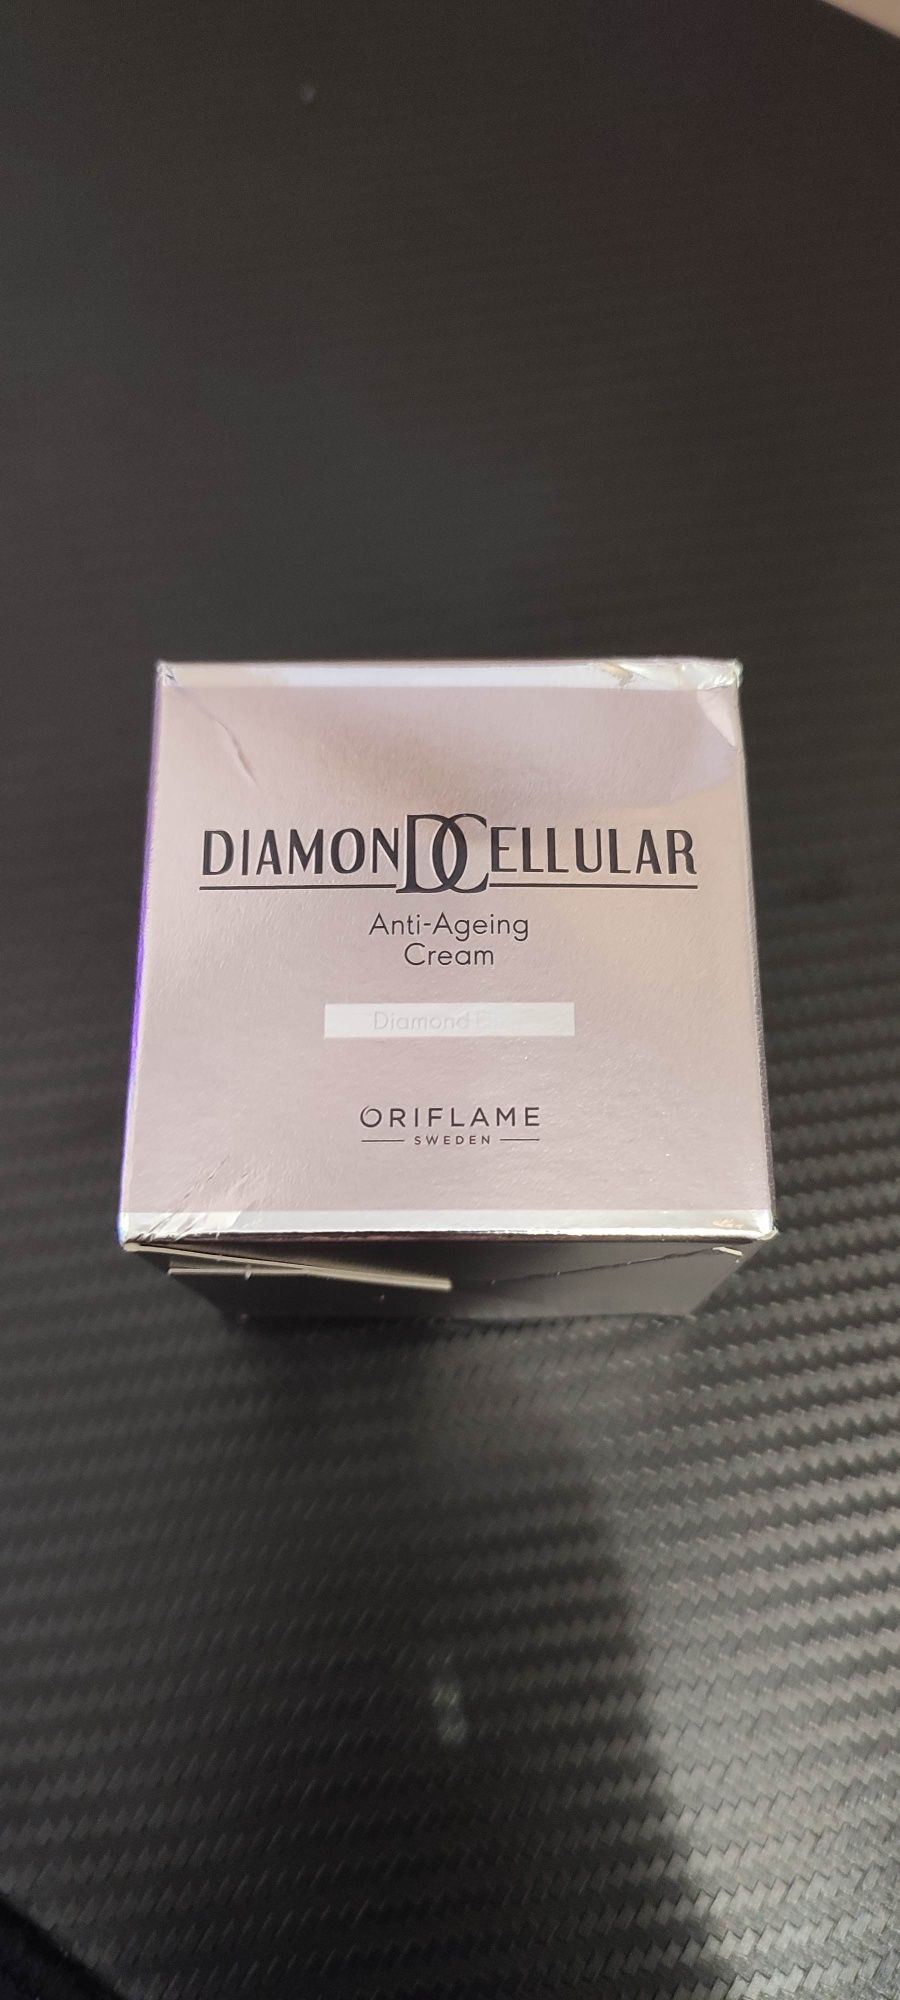 Diamond cellular Oriflame